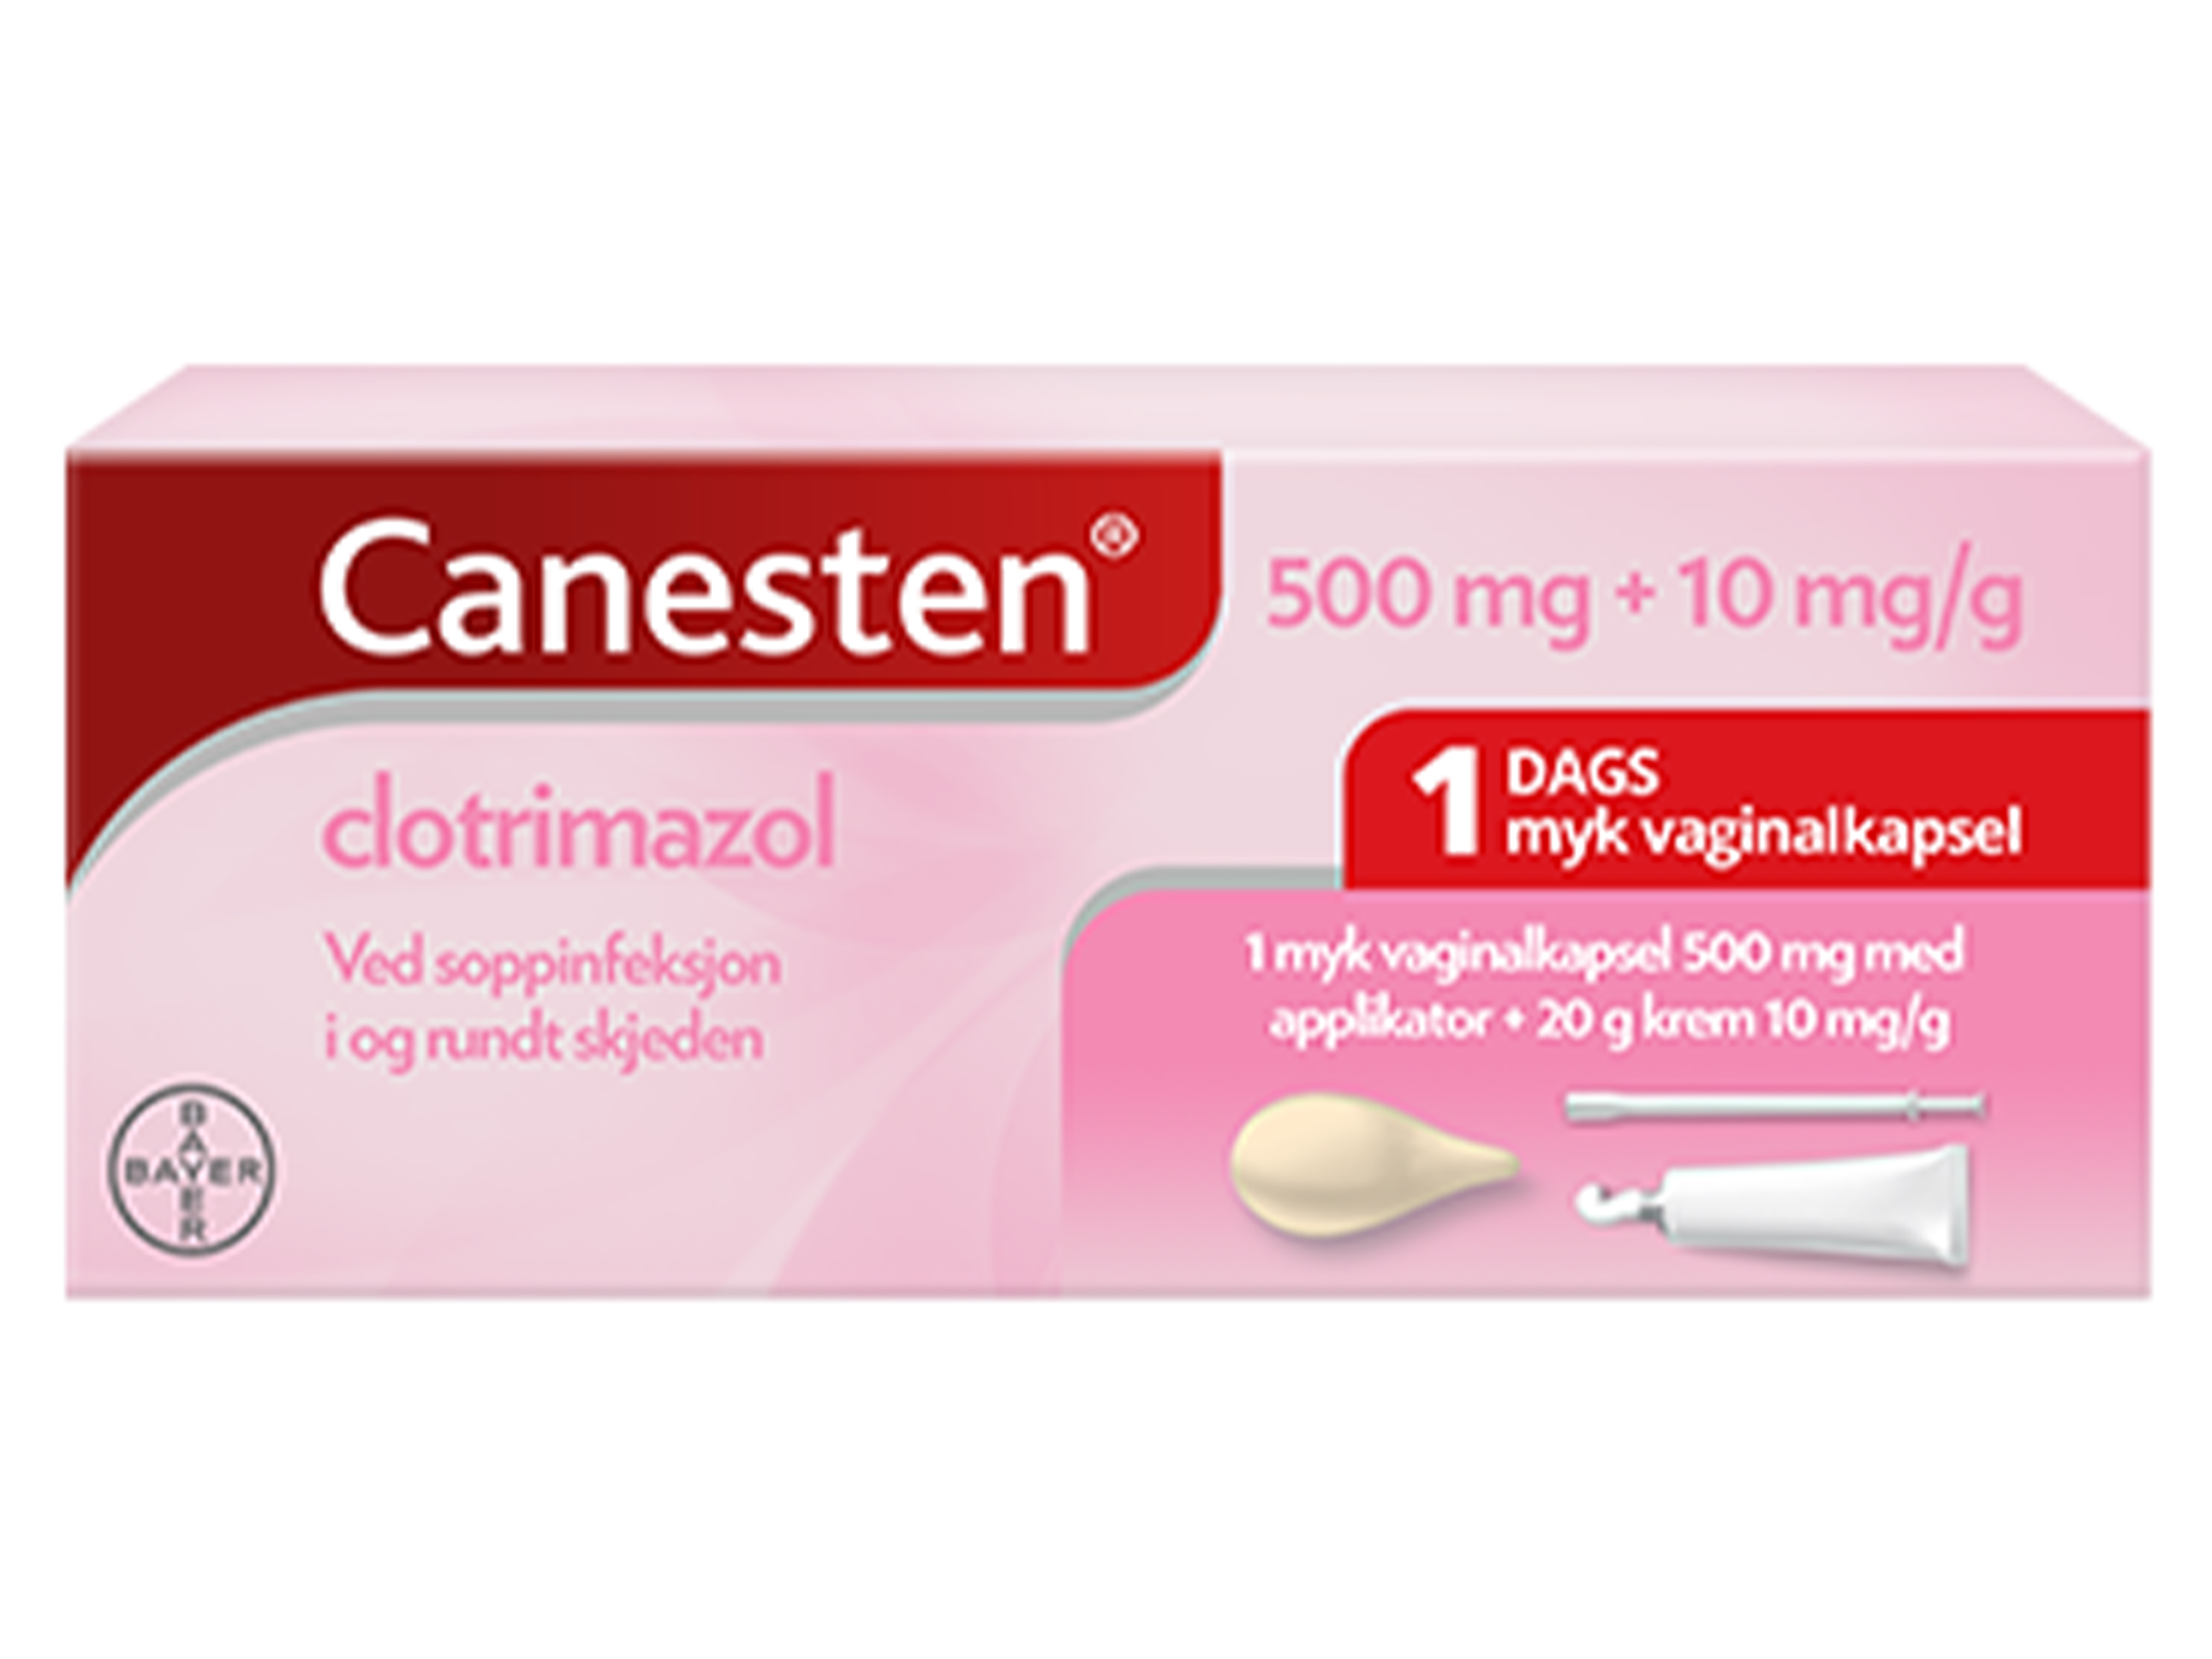 Canesten 500 mg vaginalkapsel + 10 mg/g krem, 1 stk. + 20 g